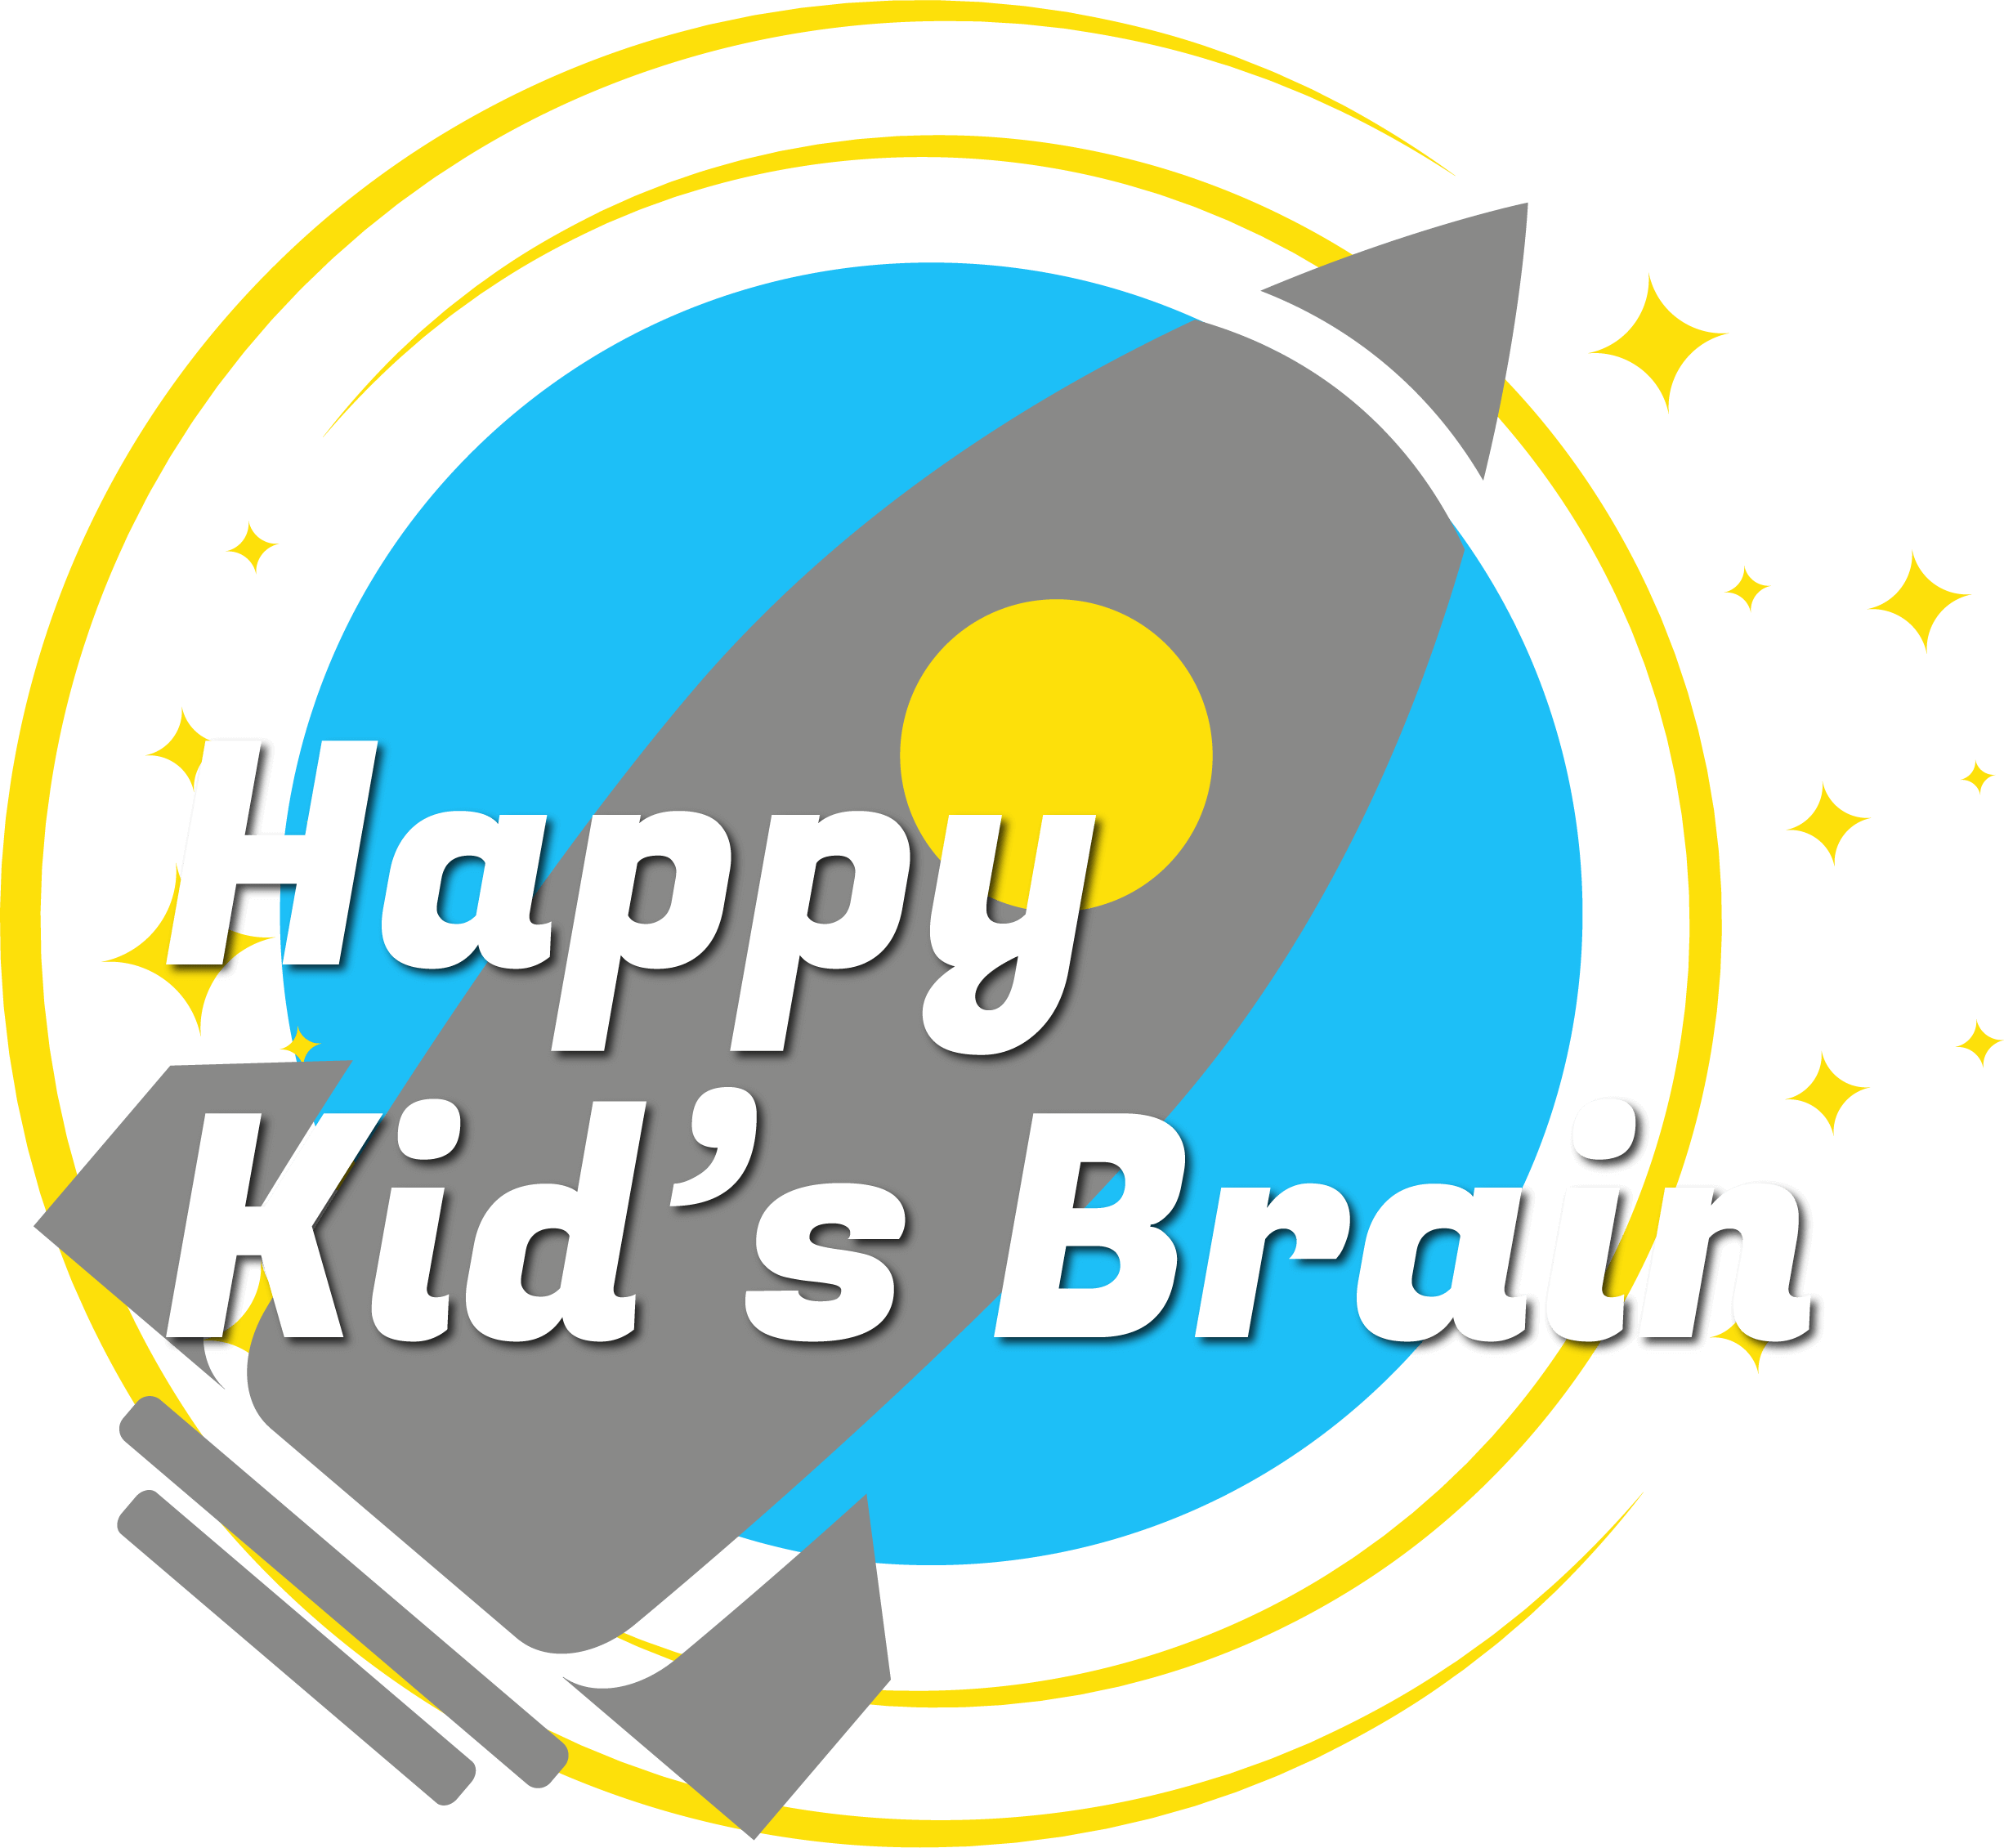 Happy kids brain training